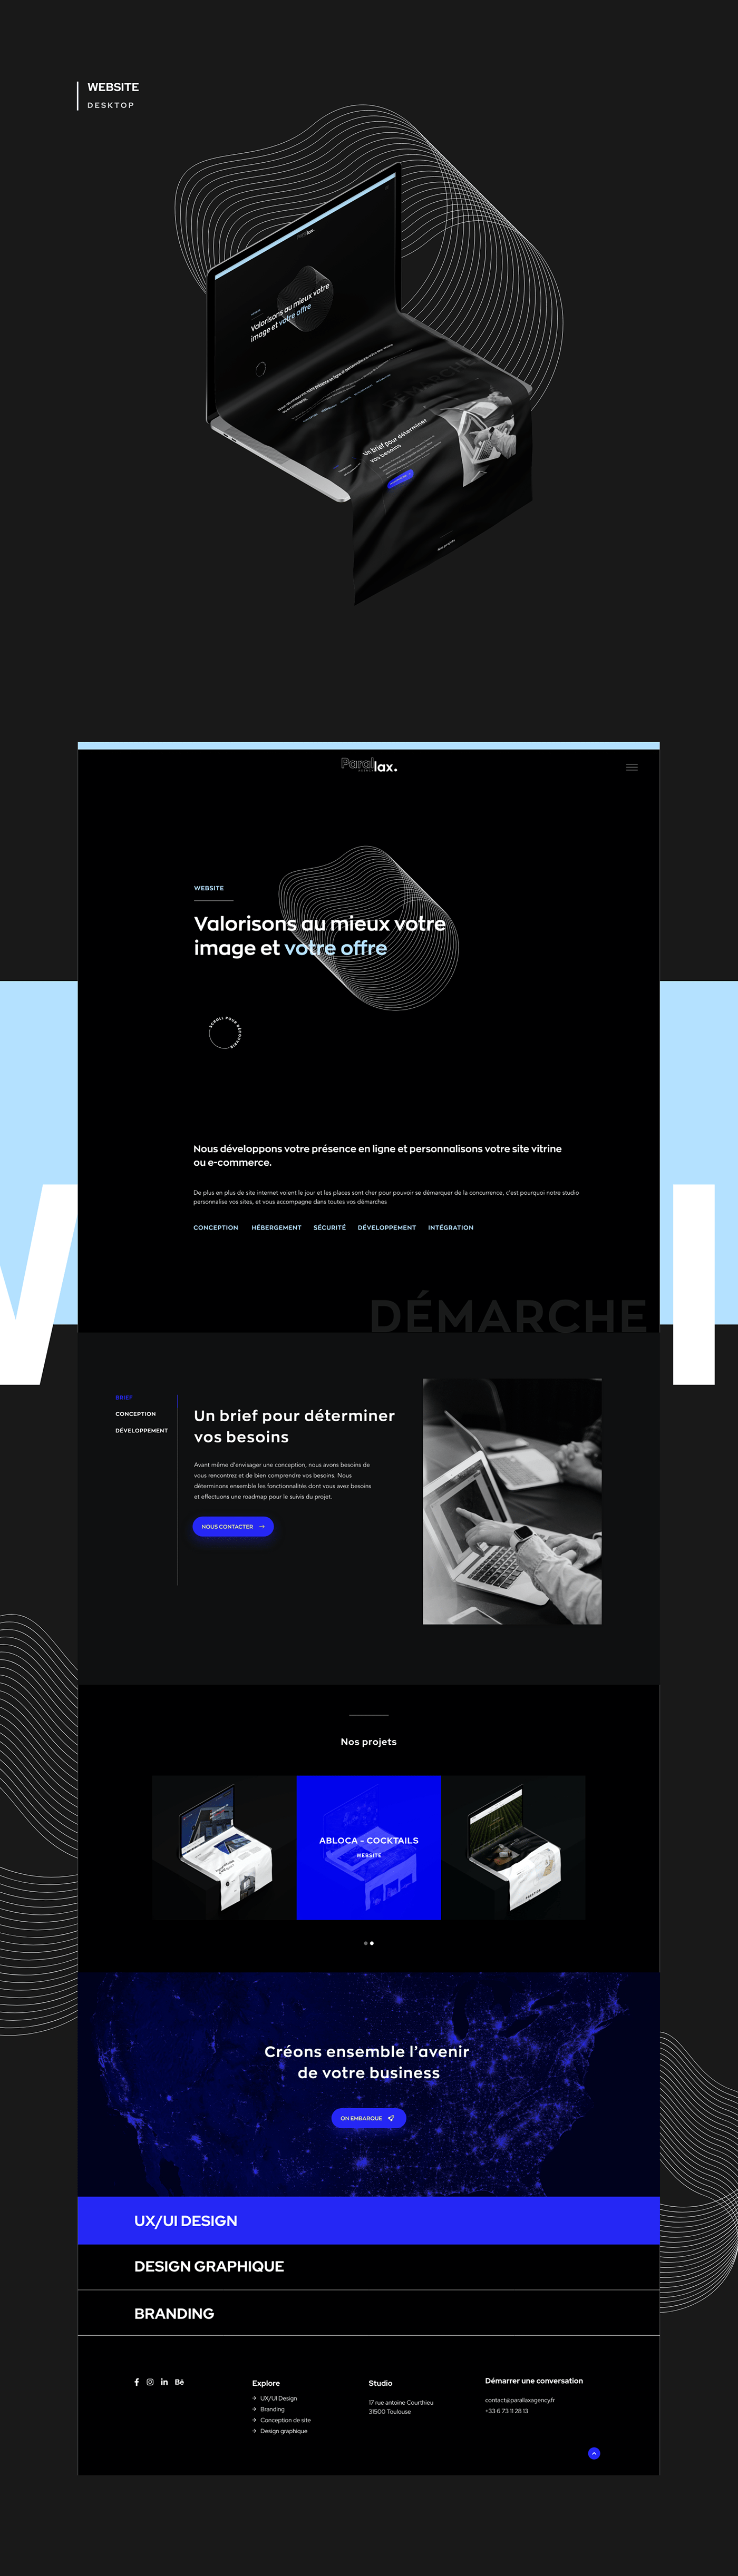 Adobe XD conception de site developpement direction artistique ui design UX design Web Website